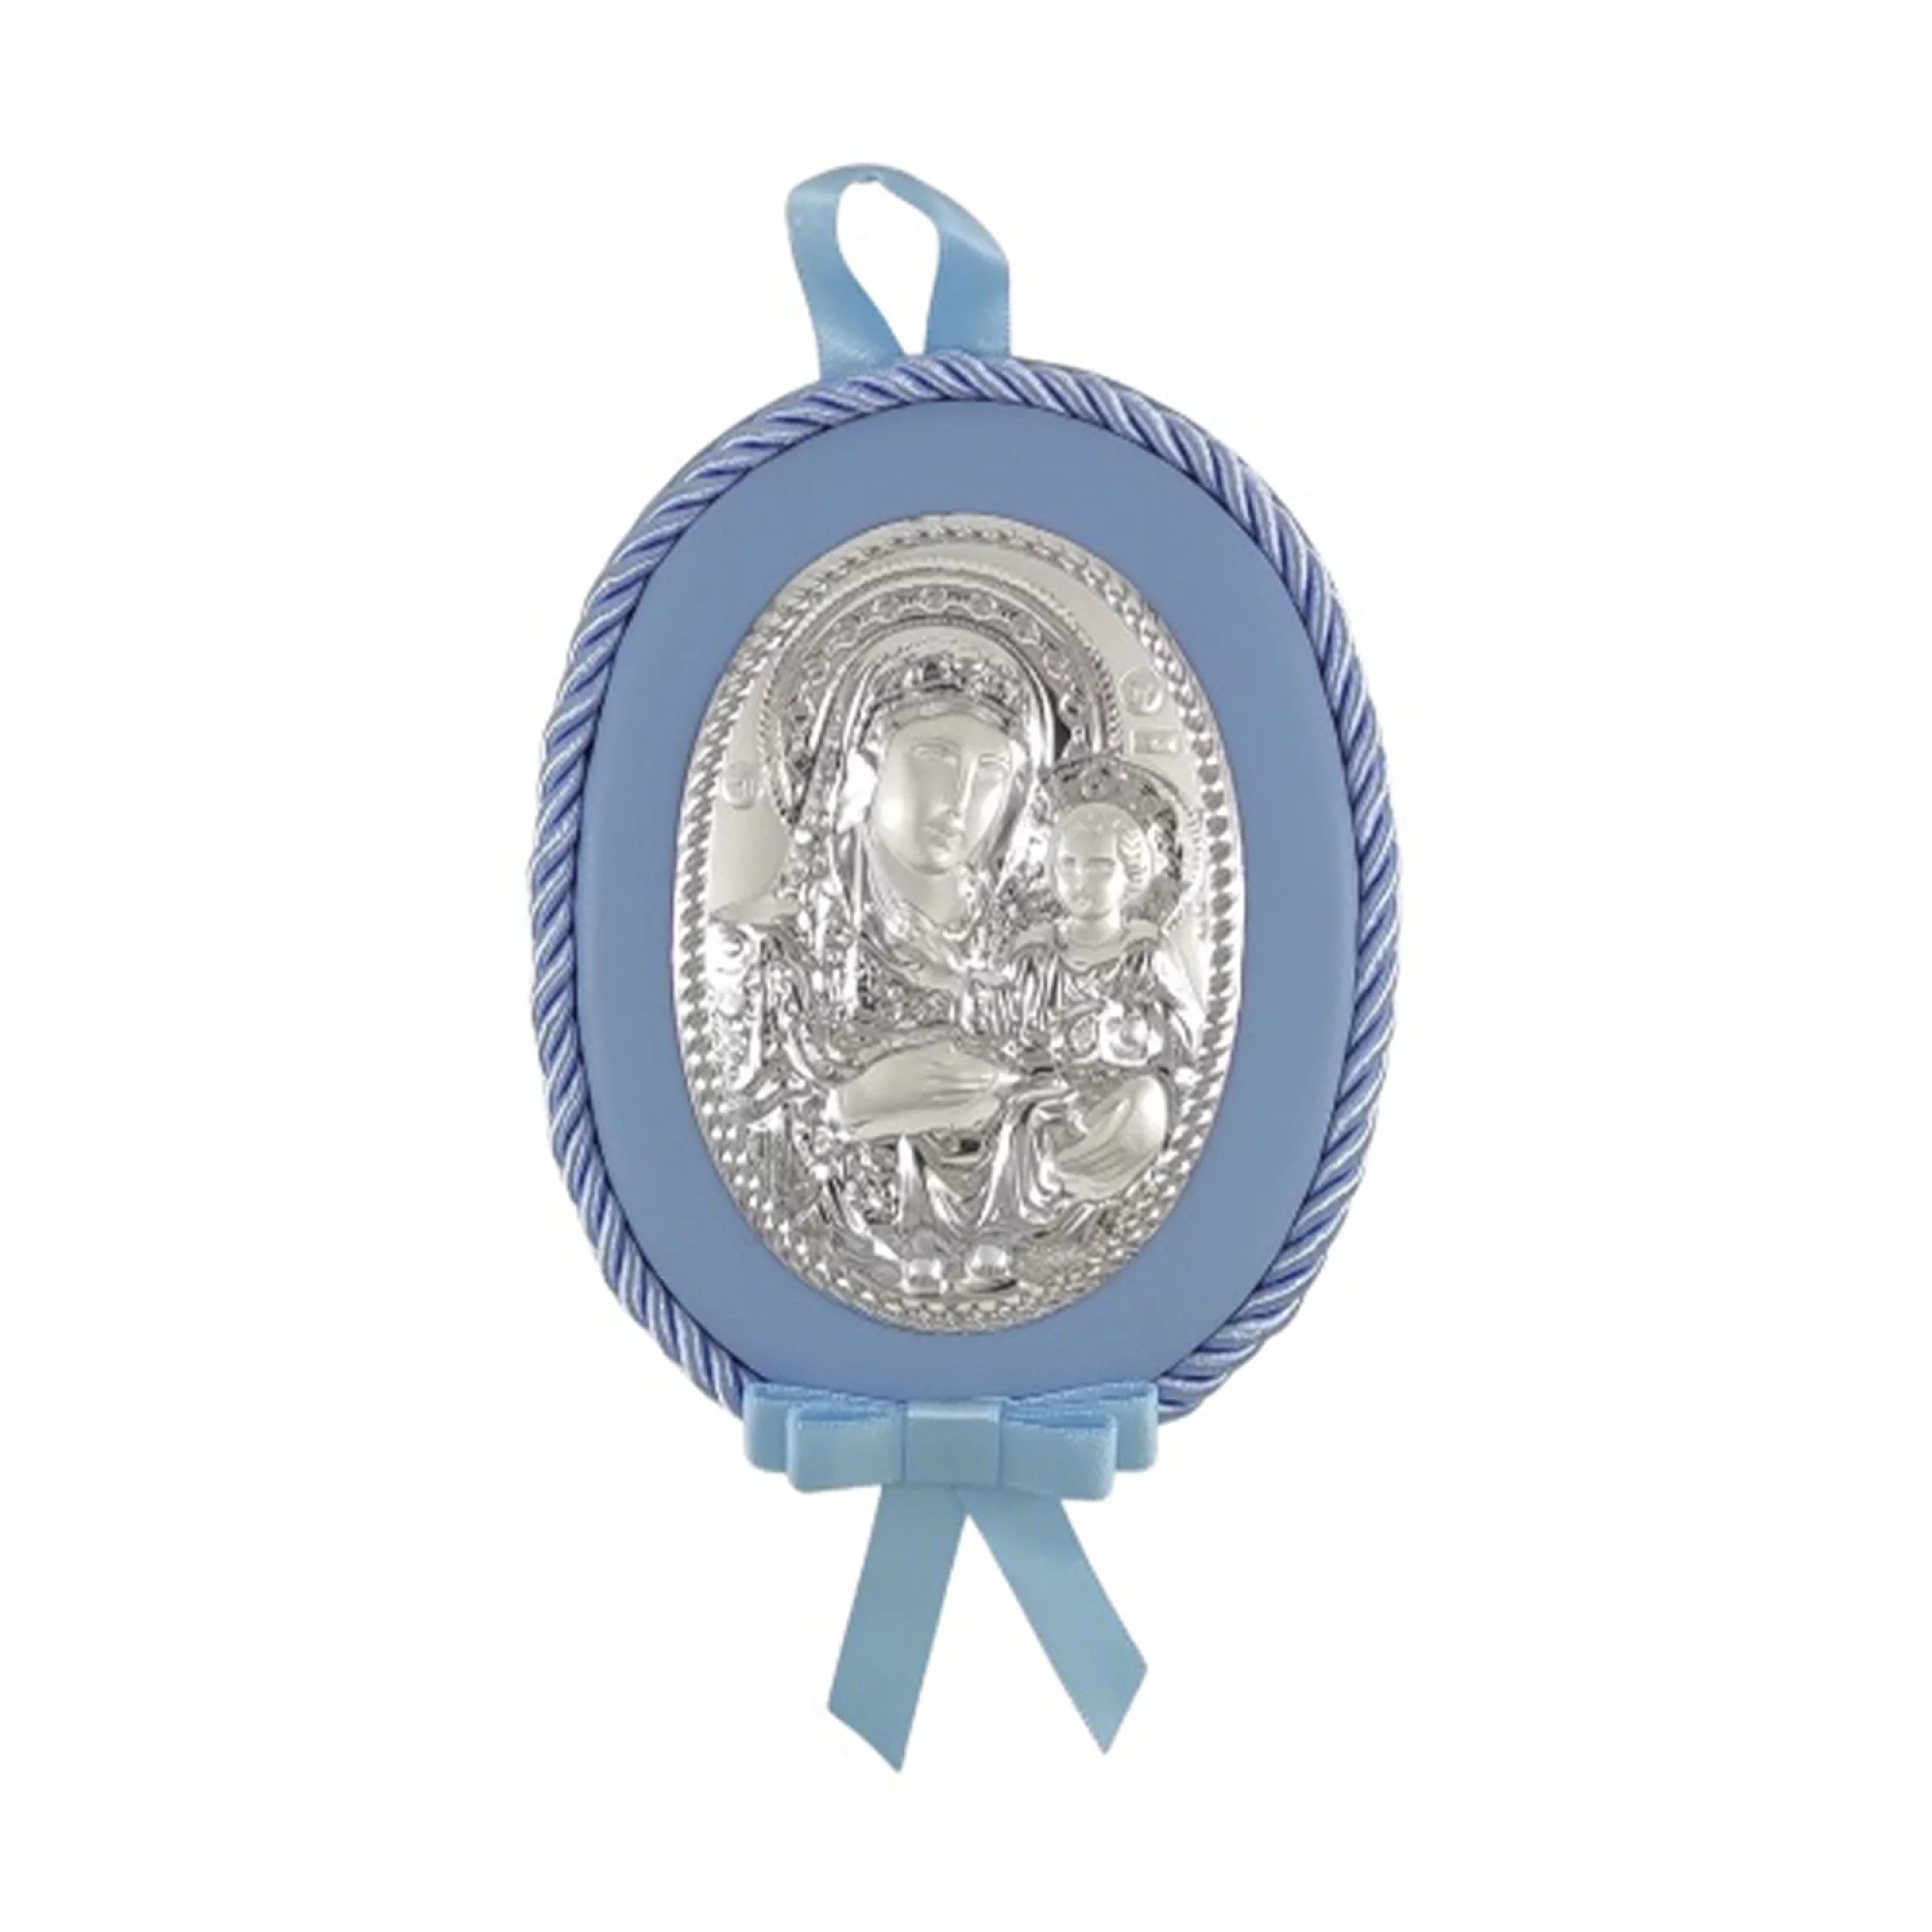 Срібний дитячий подарунок ікона "Богородиця" - 1593317 – зображення 1